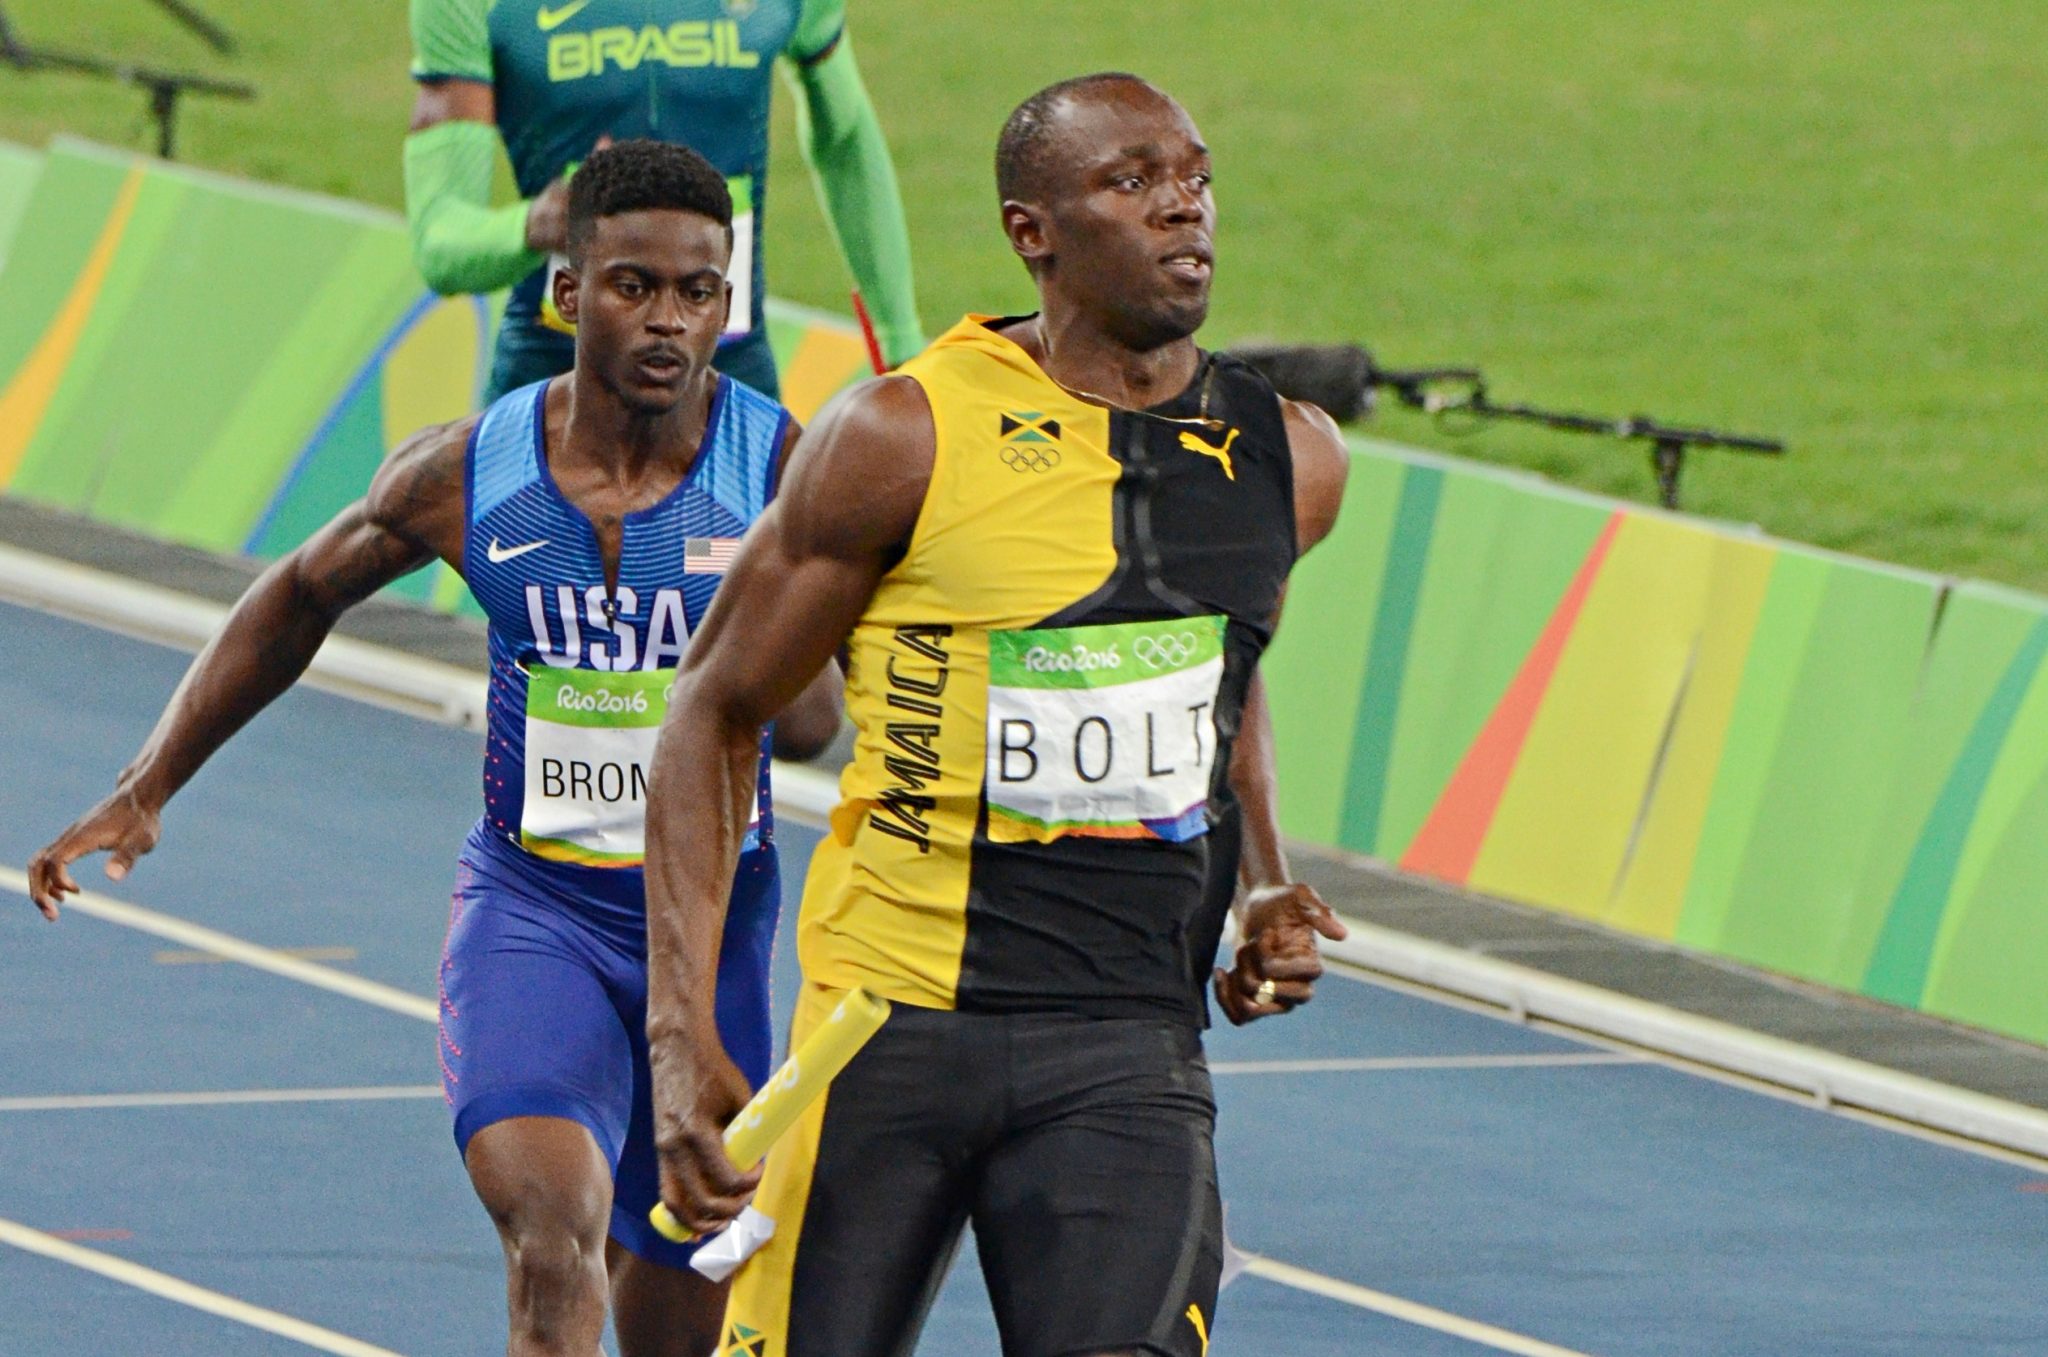 Photo: Usain Bolt; Source: usainbolt.com